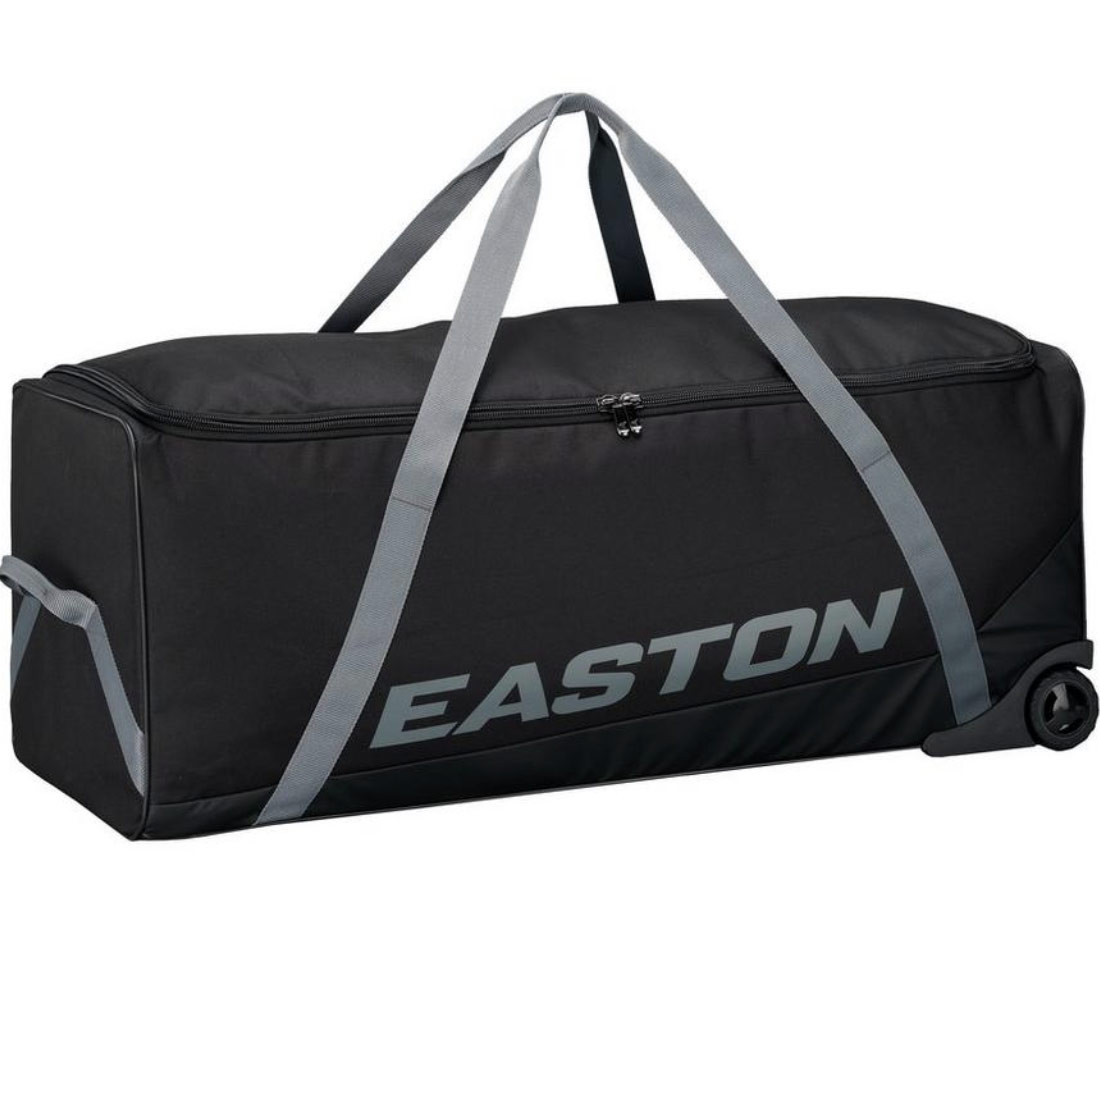 Easton Team Wheeled Equipment Bag A159057